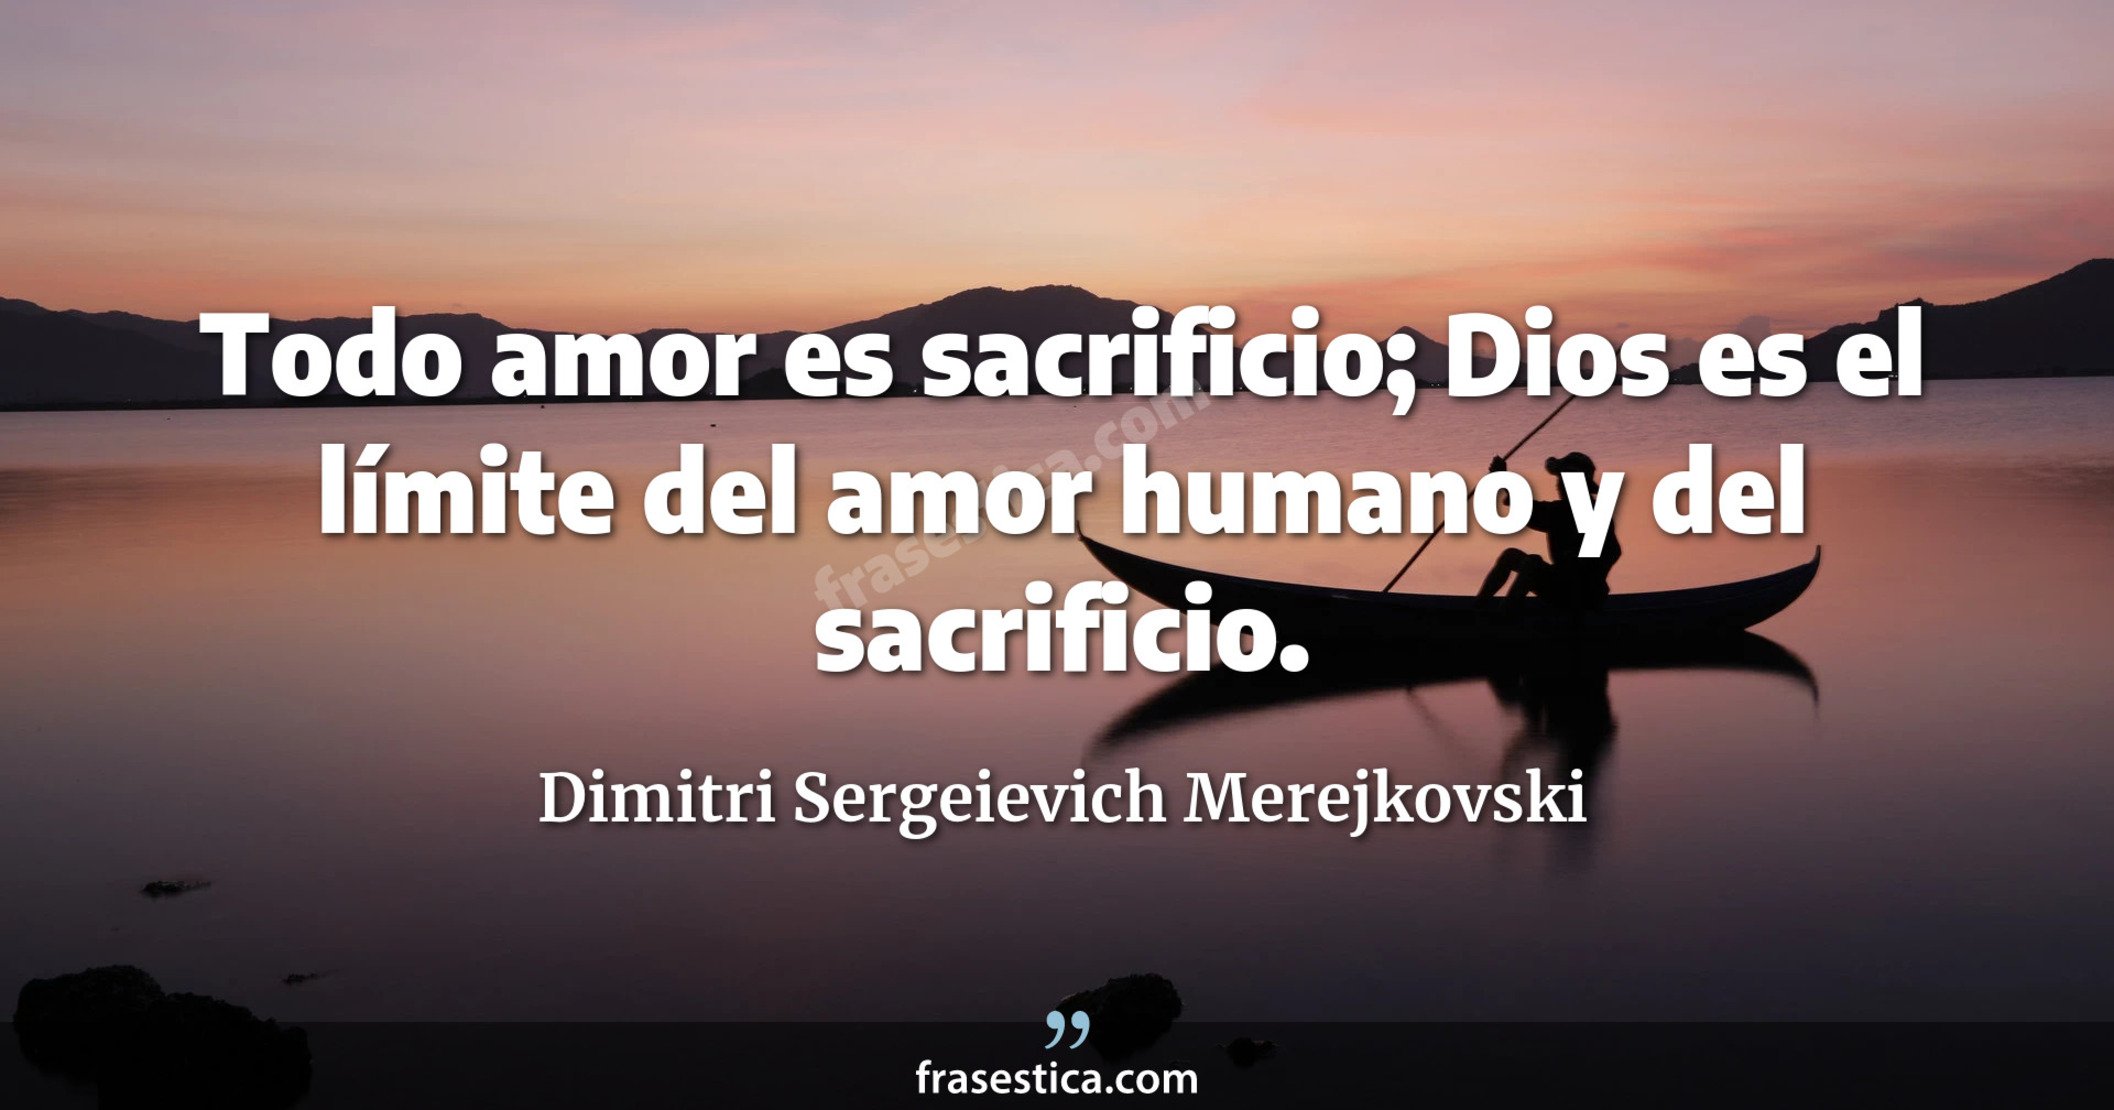 Todo amor es sacrificio; Dios es el límite del amor humano y del sacrificio. - Dimitri Sergeievich Merejkovski